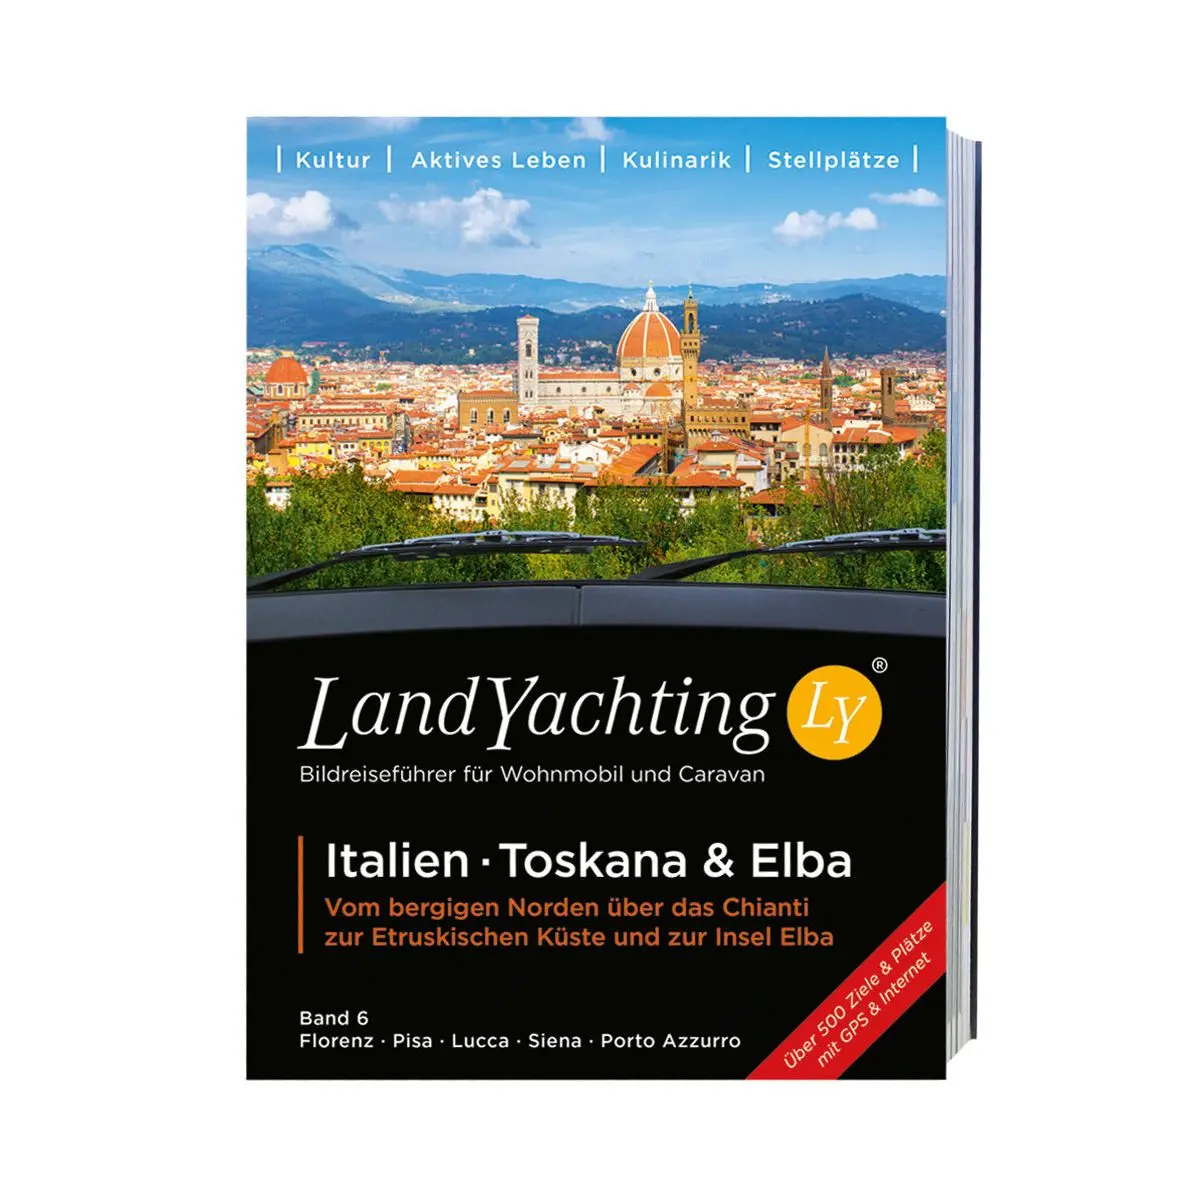 LandYachting Obrazový cestovný sprievodca - ostrov Elba, Taliansko, Toskánsko